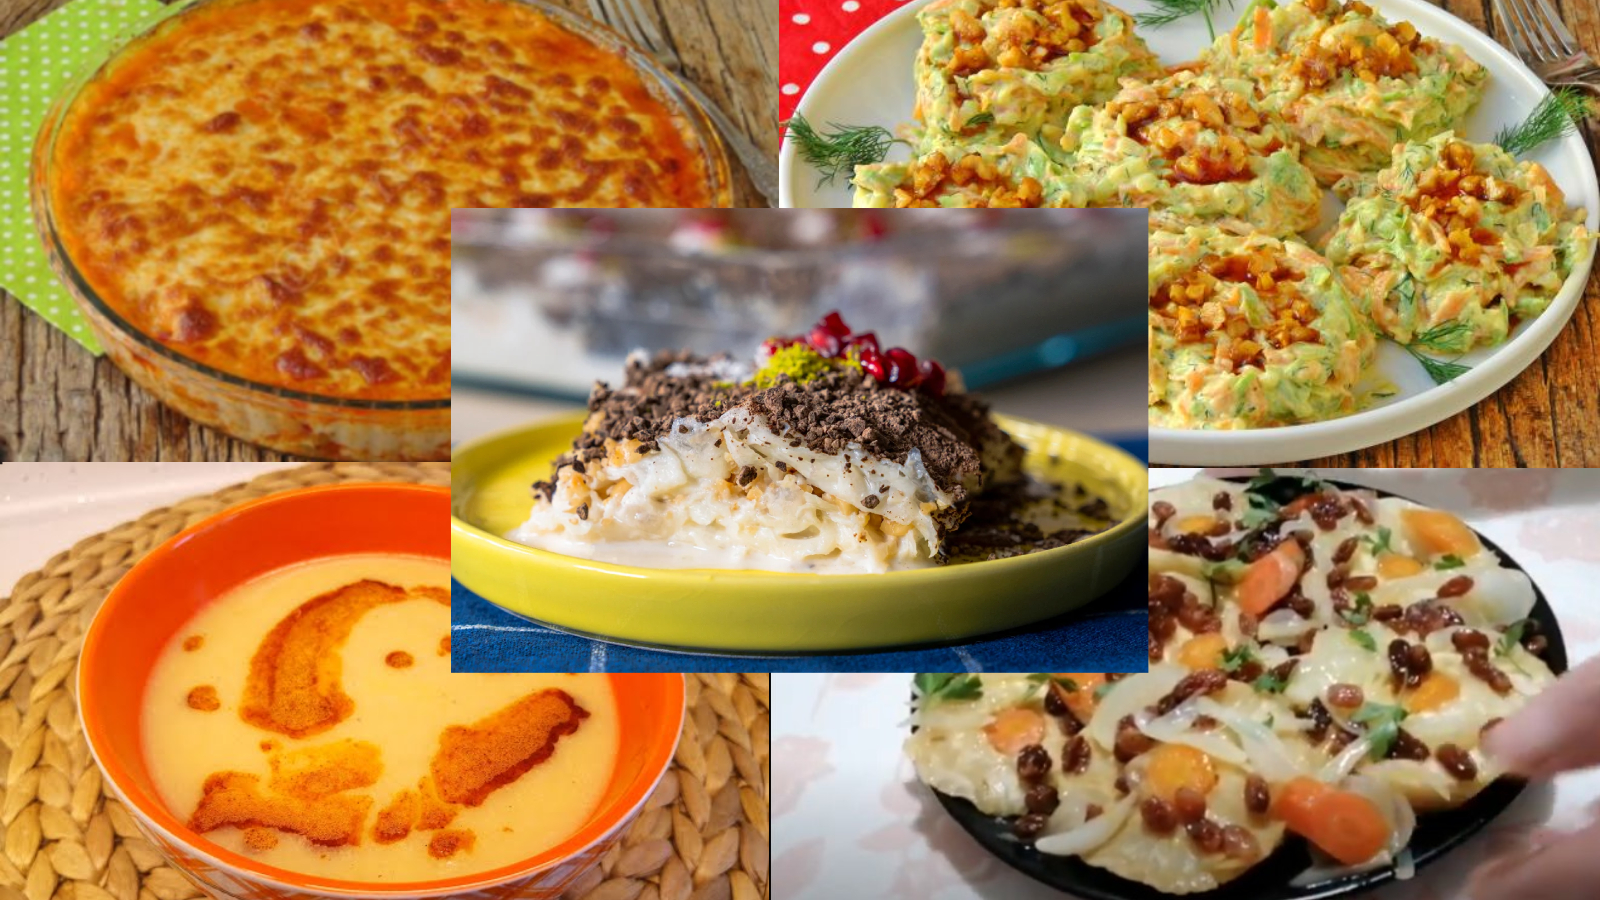 Ramazan boyunca her gün 1 iftar menüsü sizlerle olacak.